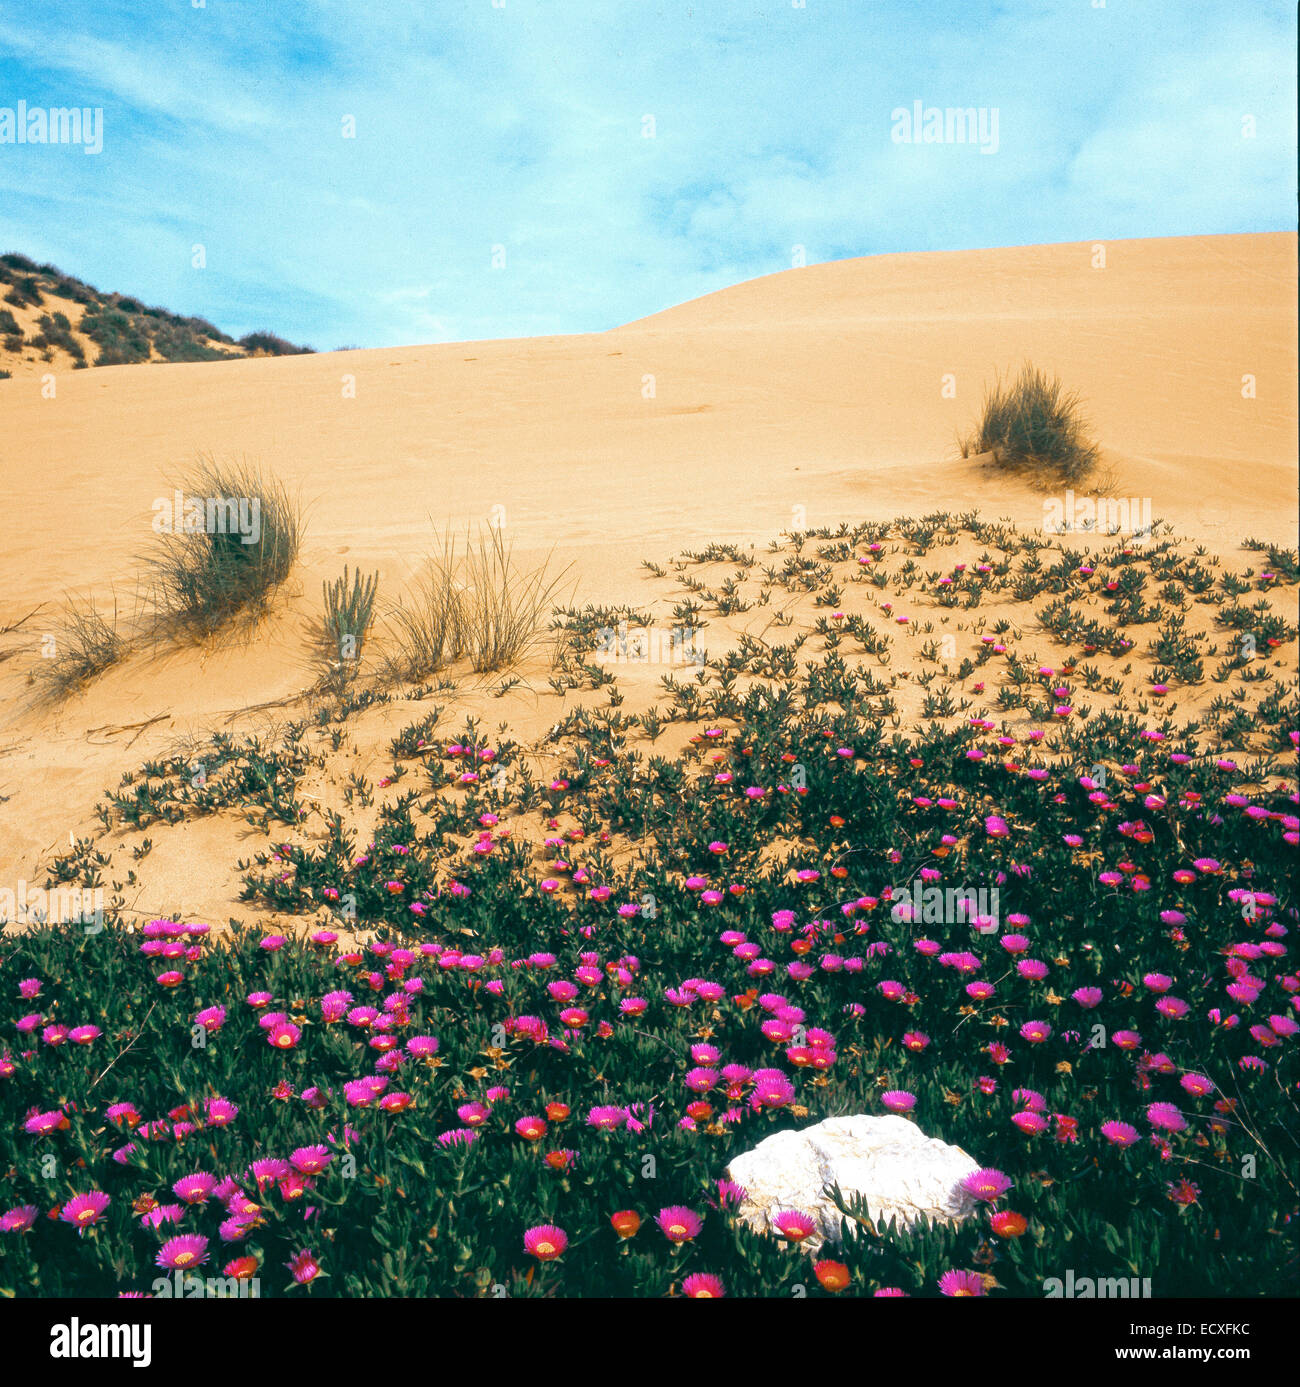 Las dunas de arena de mar de Piscinas - Cerdeña- florecimiento de Sally Mi guapo o Hottentot Fig (Carpobrotus acinaciformis) Foto de stock